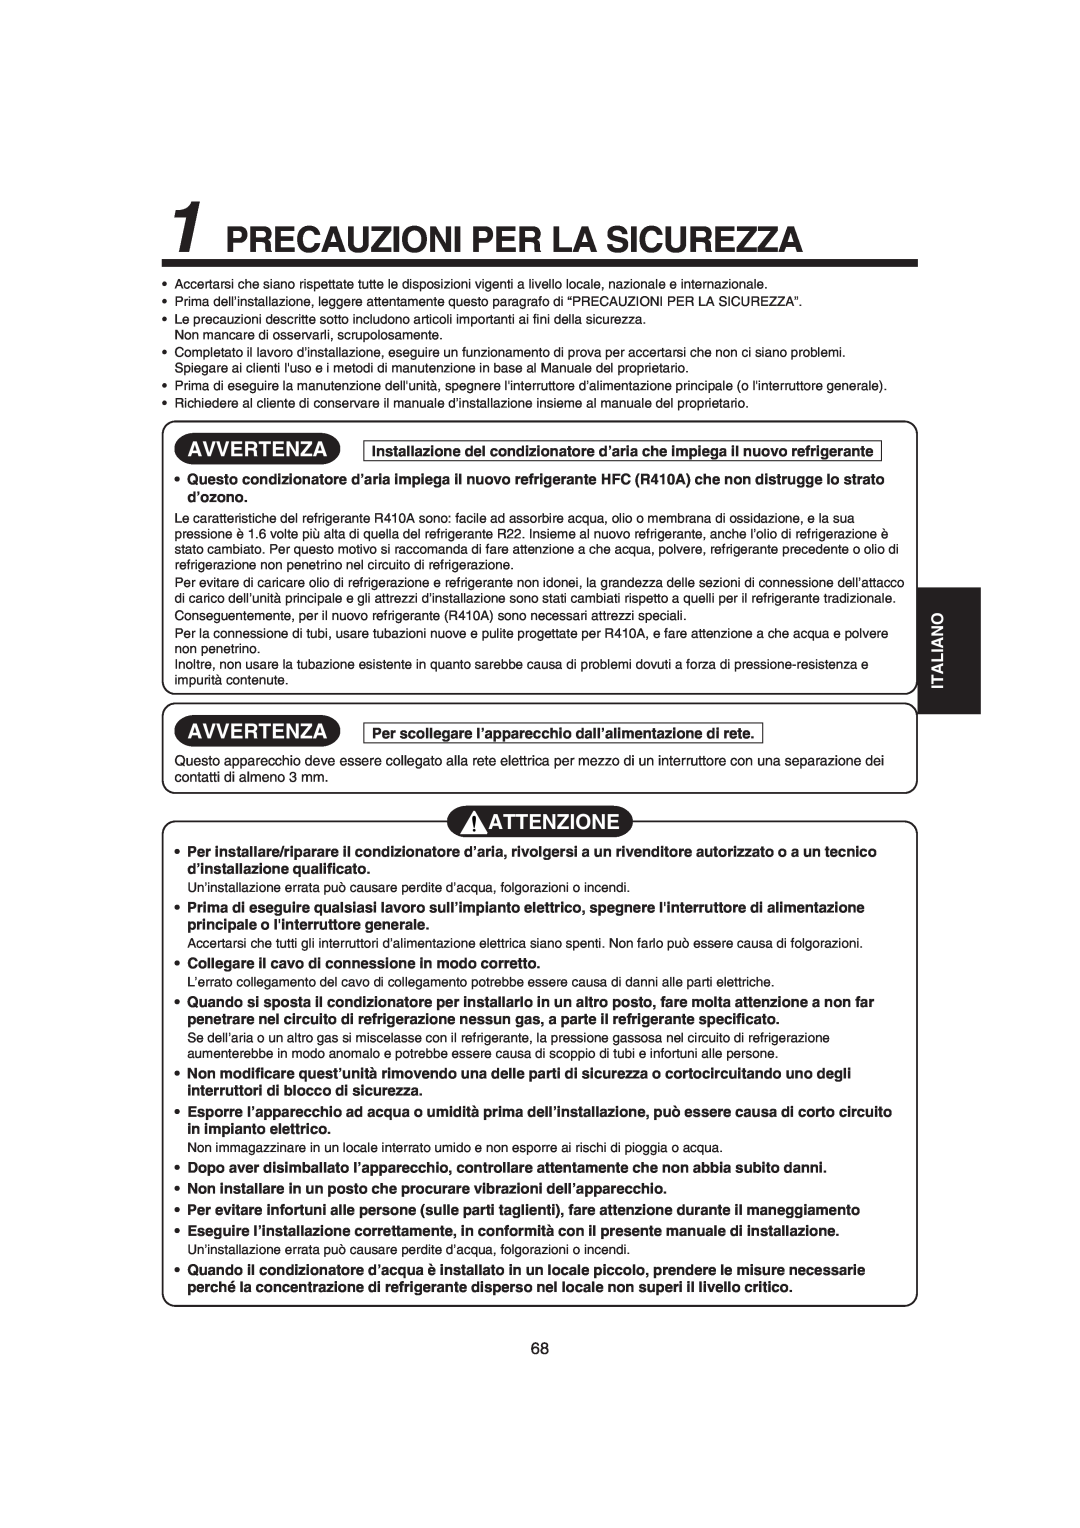 Pentax MMK-AP0071H, MMK-AP0121H, MMK-AP0181H Precauzioni Per La Sicurezza, Avvertenza, Attenzione, Italiano 